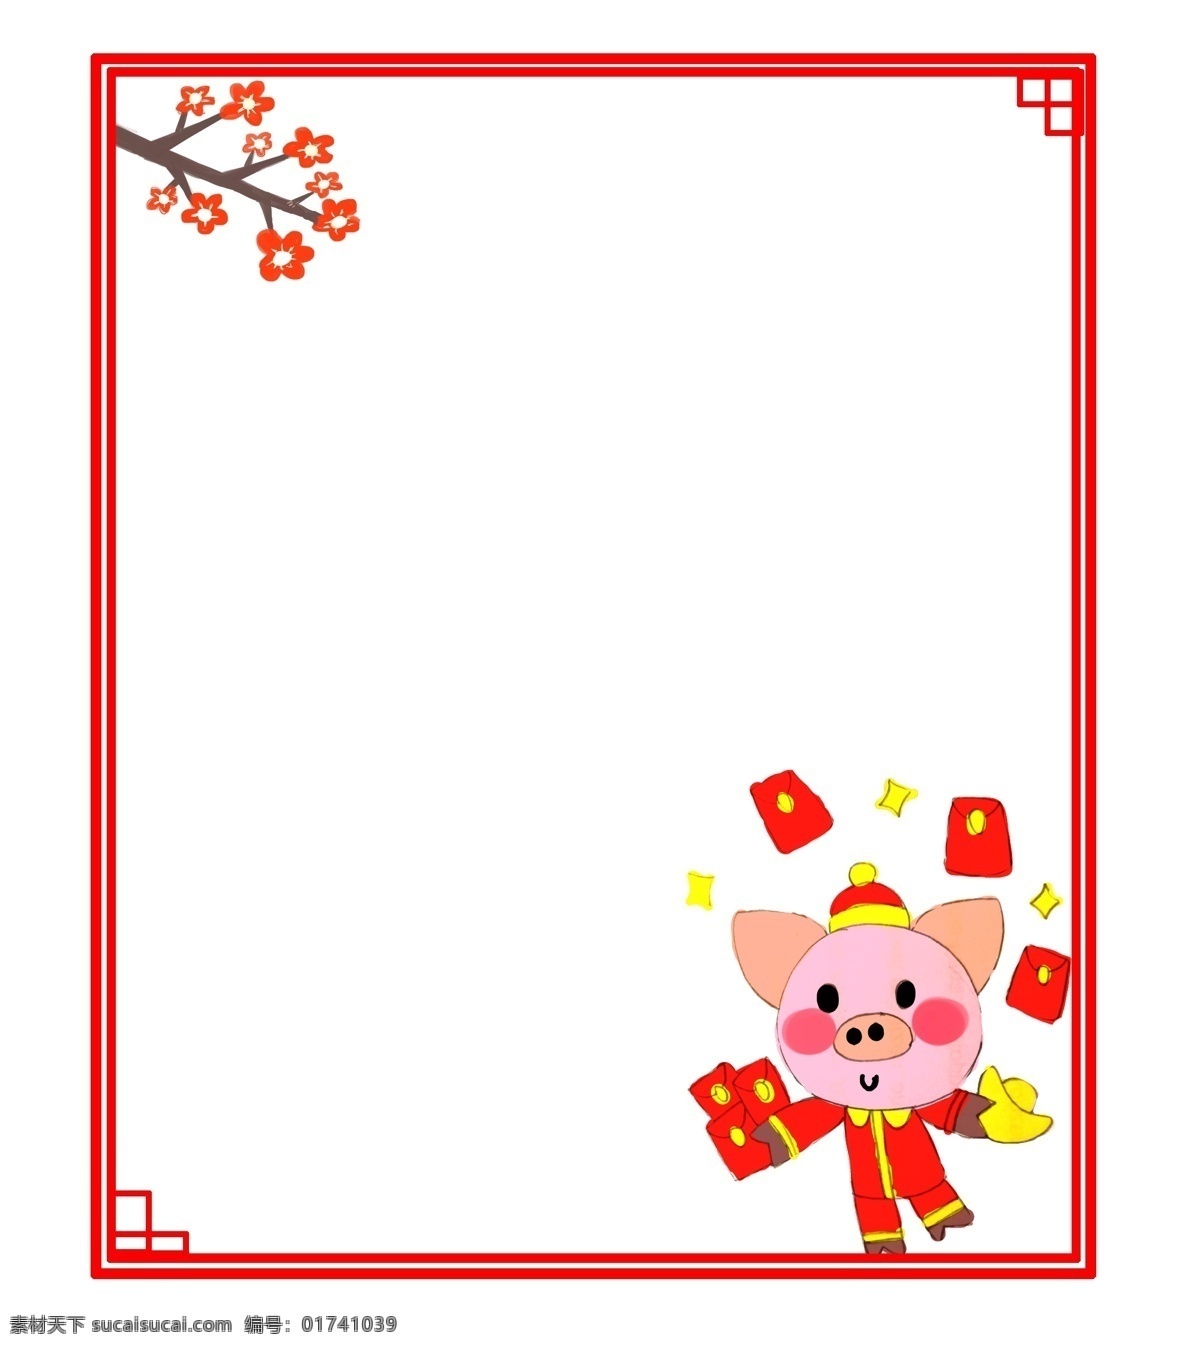 新年 卡通 粉色 小 猪 撒 红包 边框 撒红包边框 卡通手绘 粉色小猪 红包雨 金色星星 喜气洋洋 财源广进 红包拿来